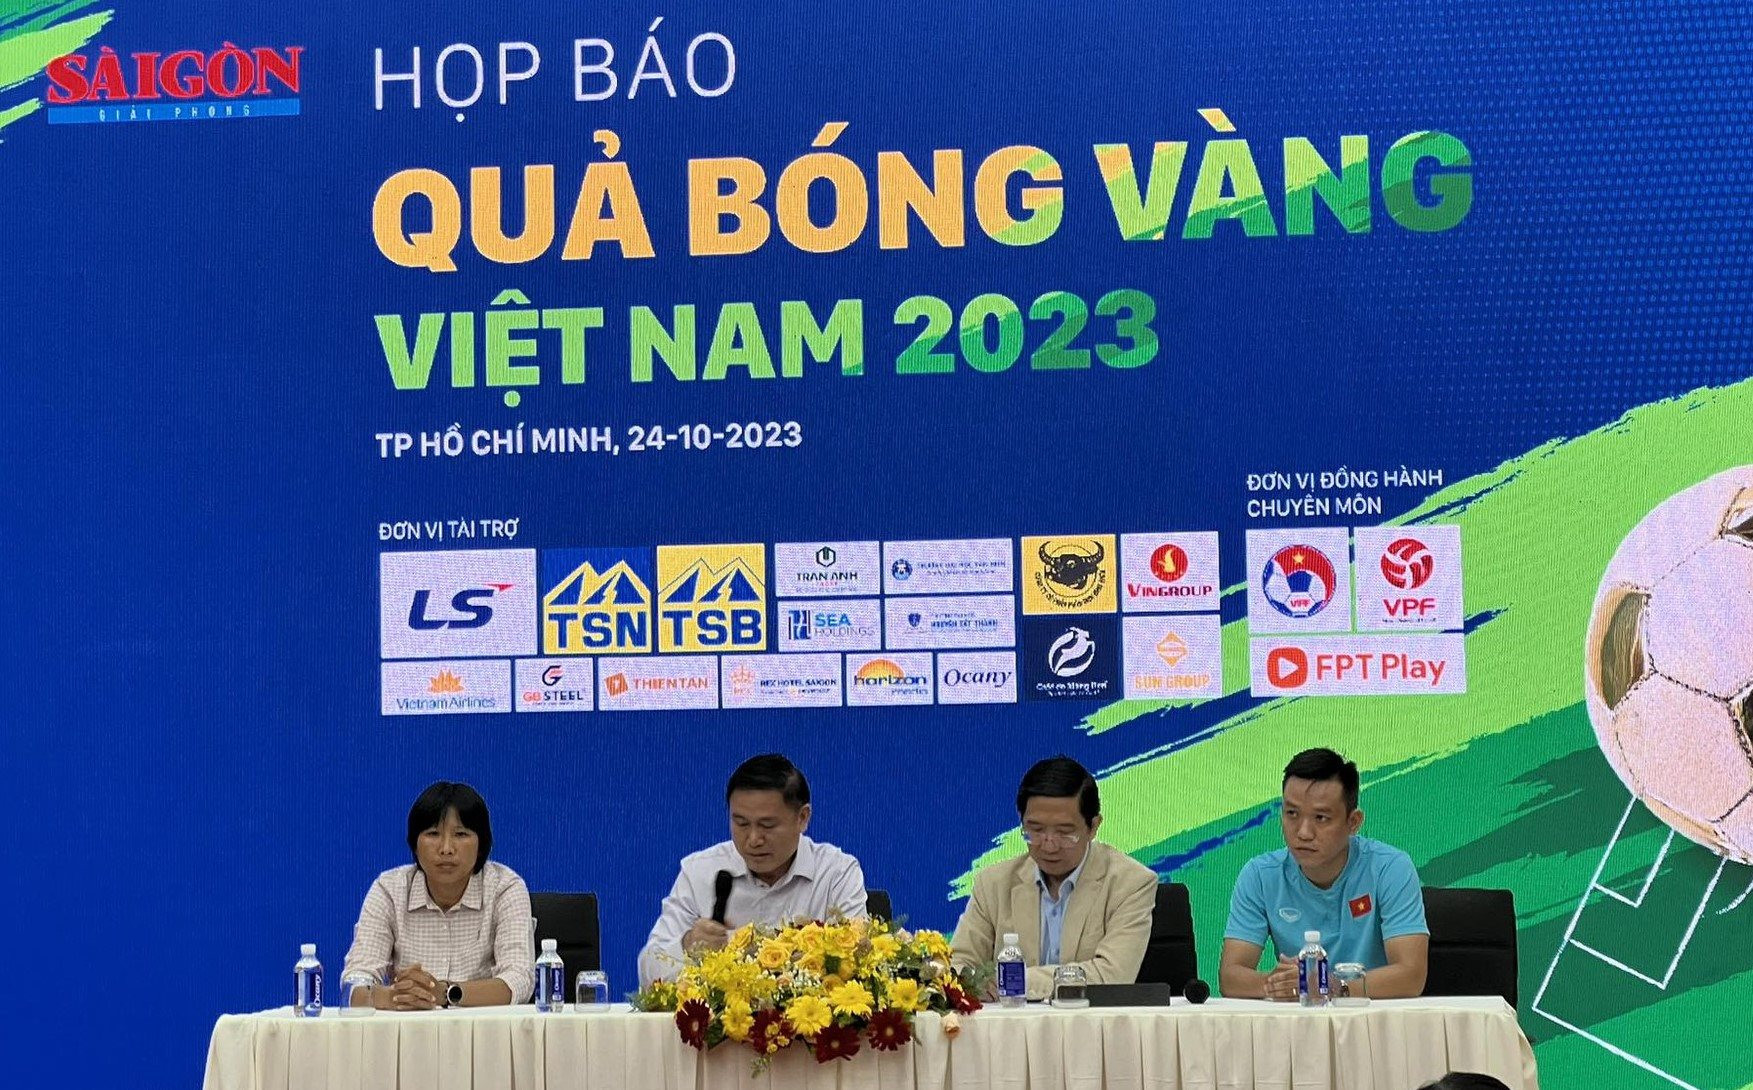 Quả bóng Vàng Việt Nam 2023 có thêm giải Cống hiến